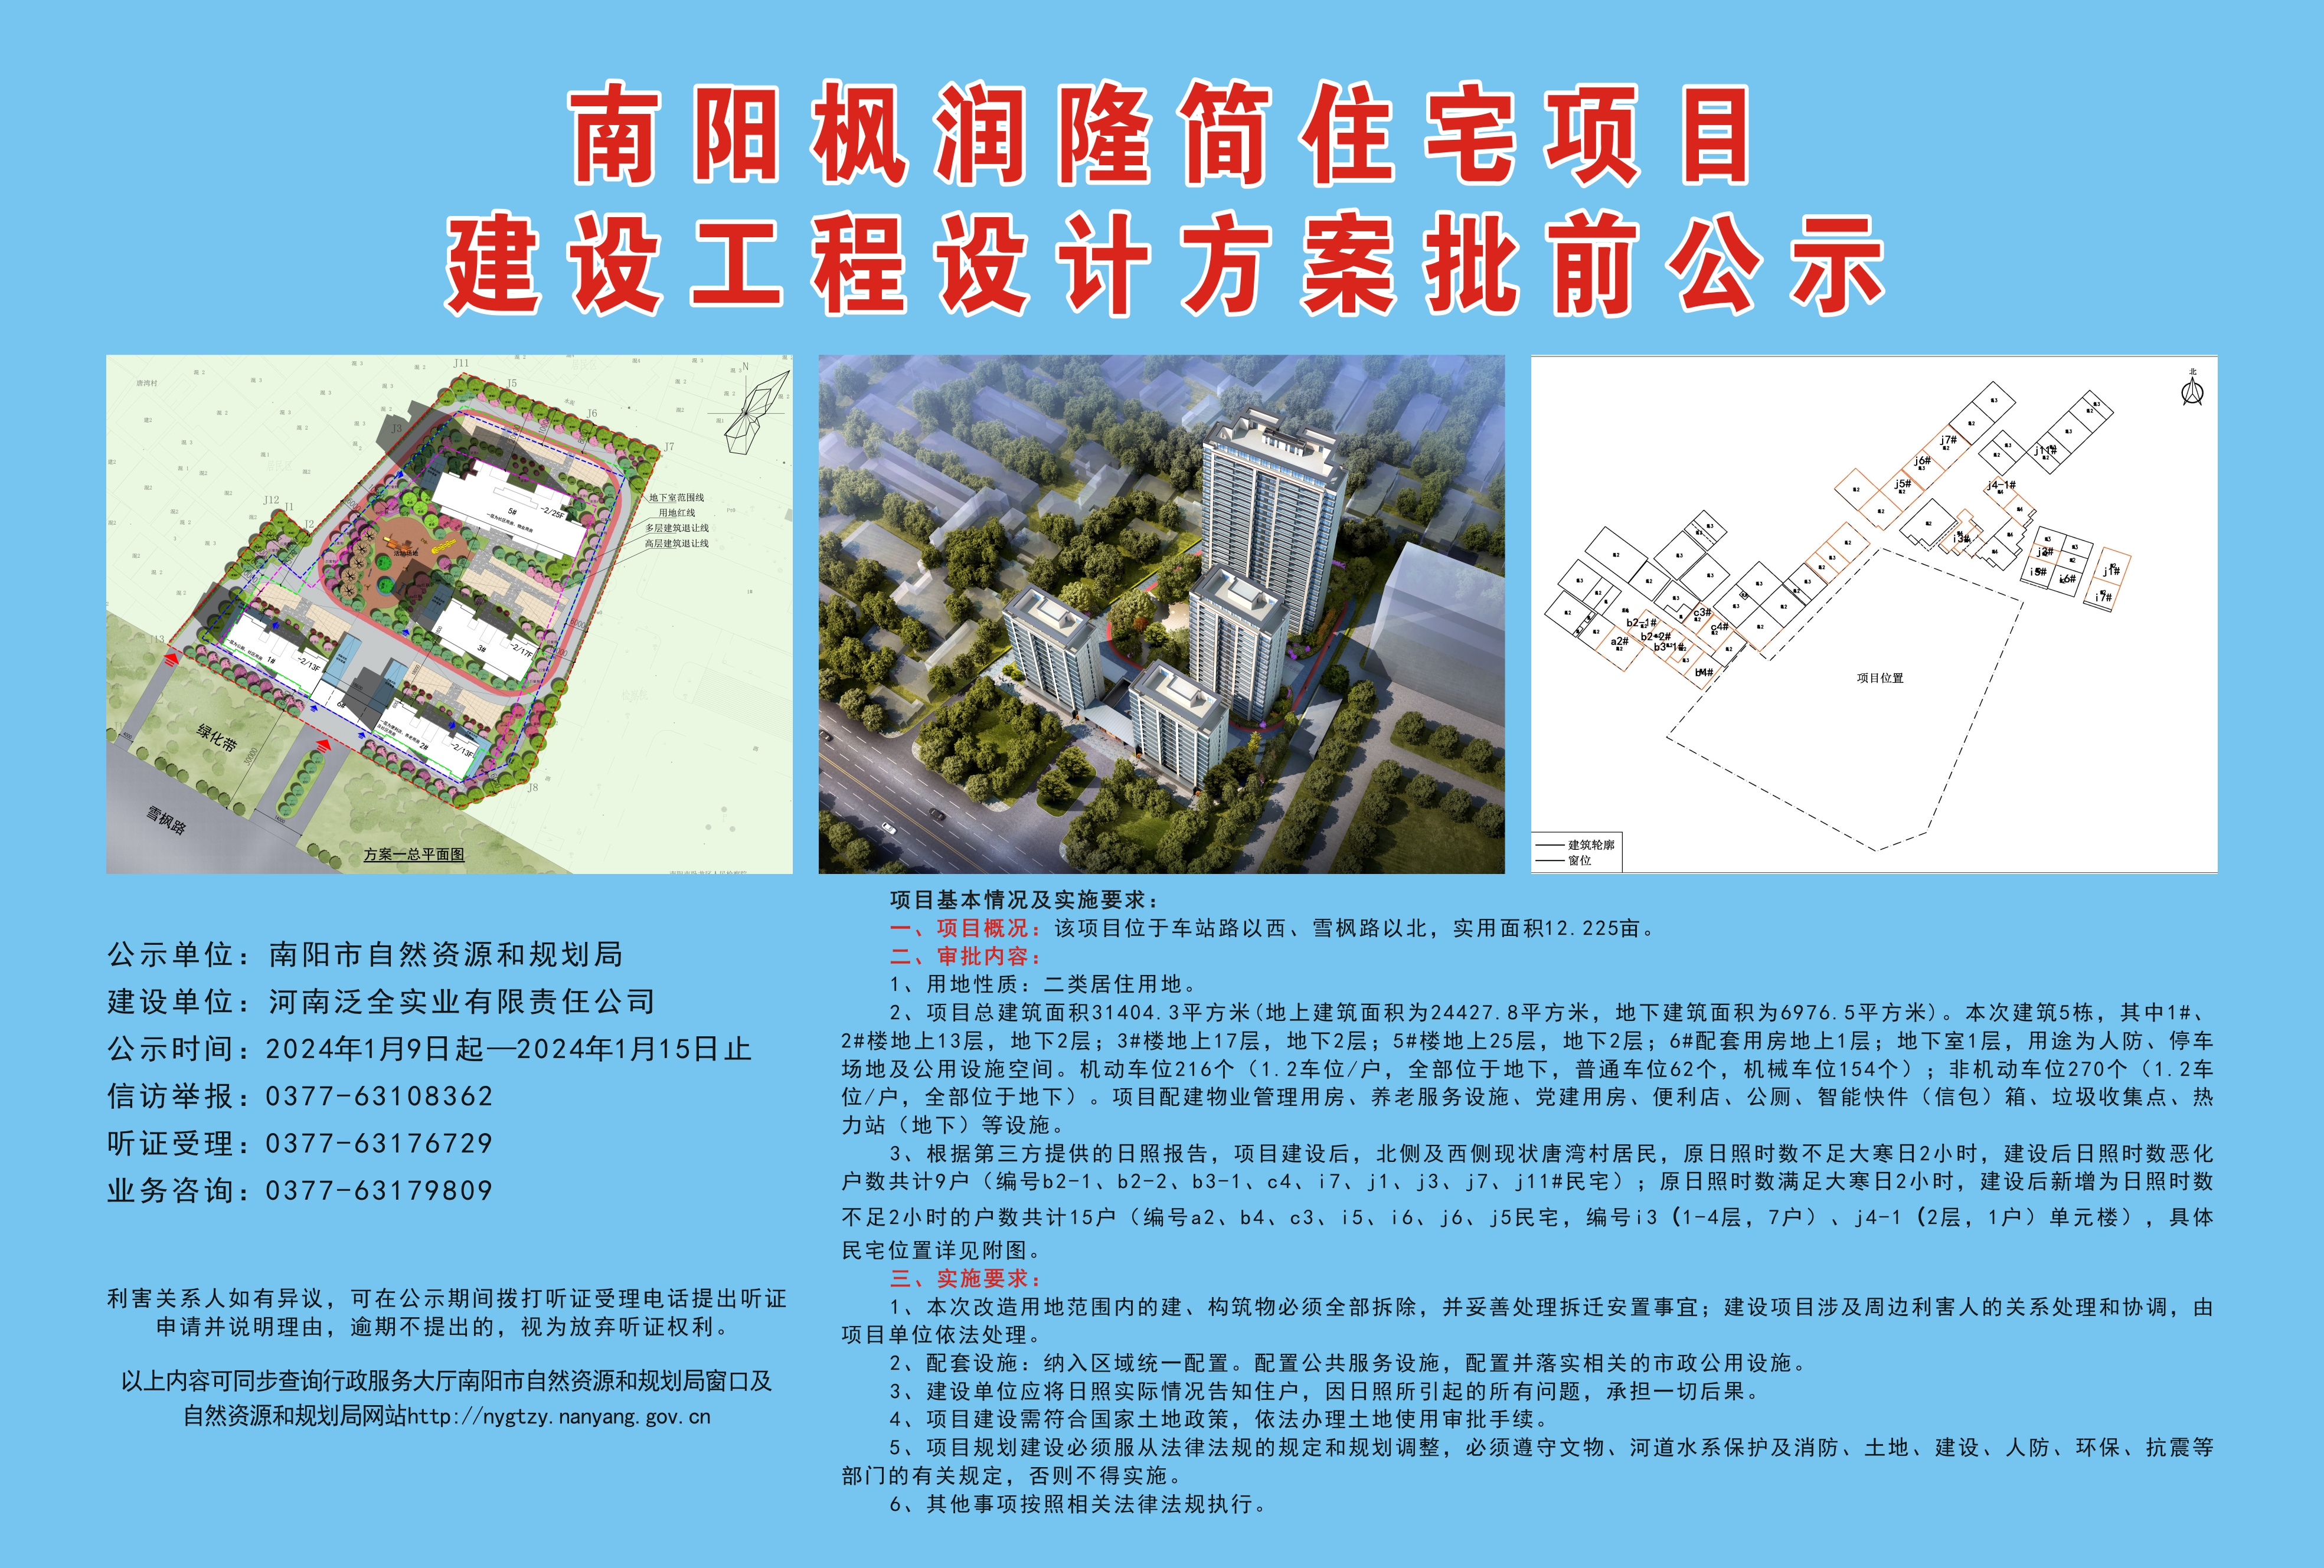 南阳枫润隆简住宅项目建设工程设计方案批前公示